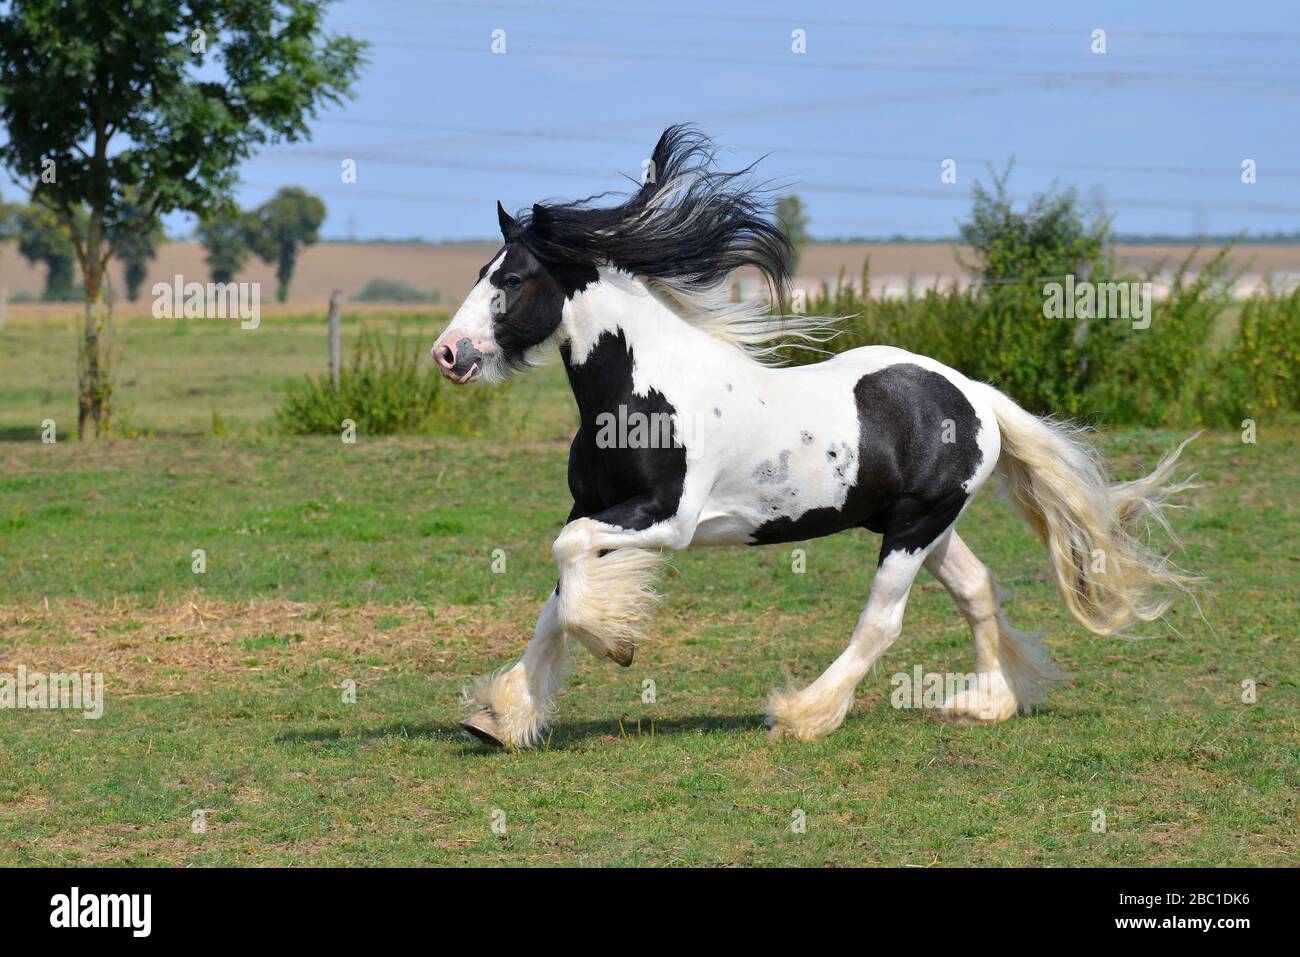 Pinto Irish Cos Horse course au canter sur le terrain. Horizontal, vue latérale, en mouvement. Banque D'Images